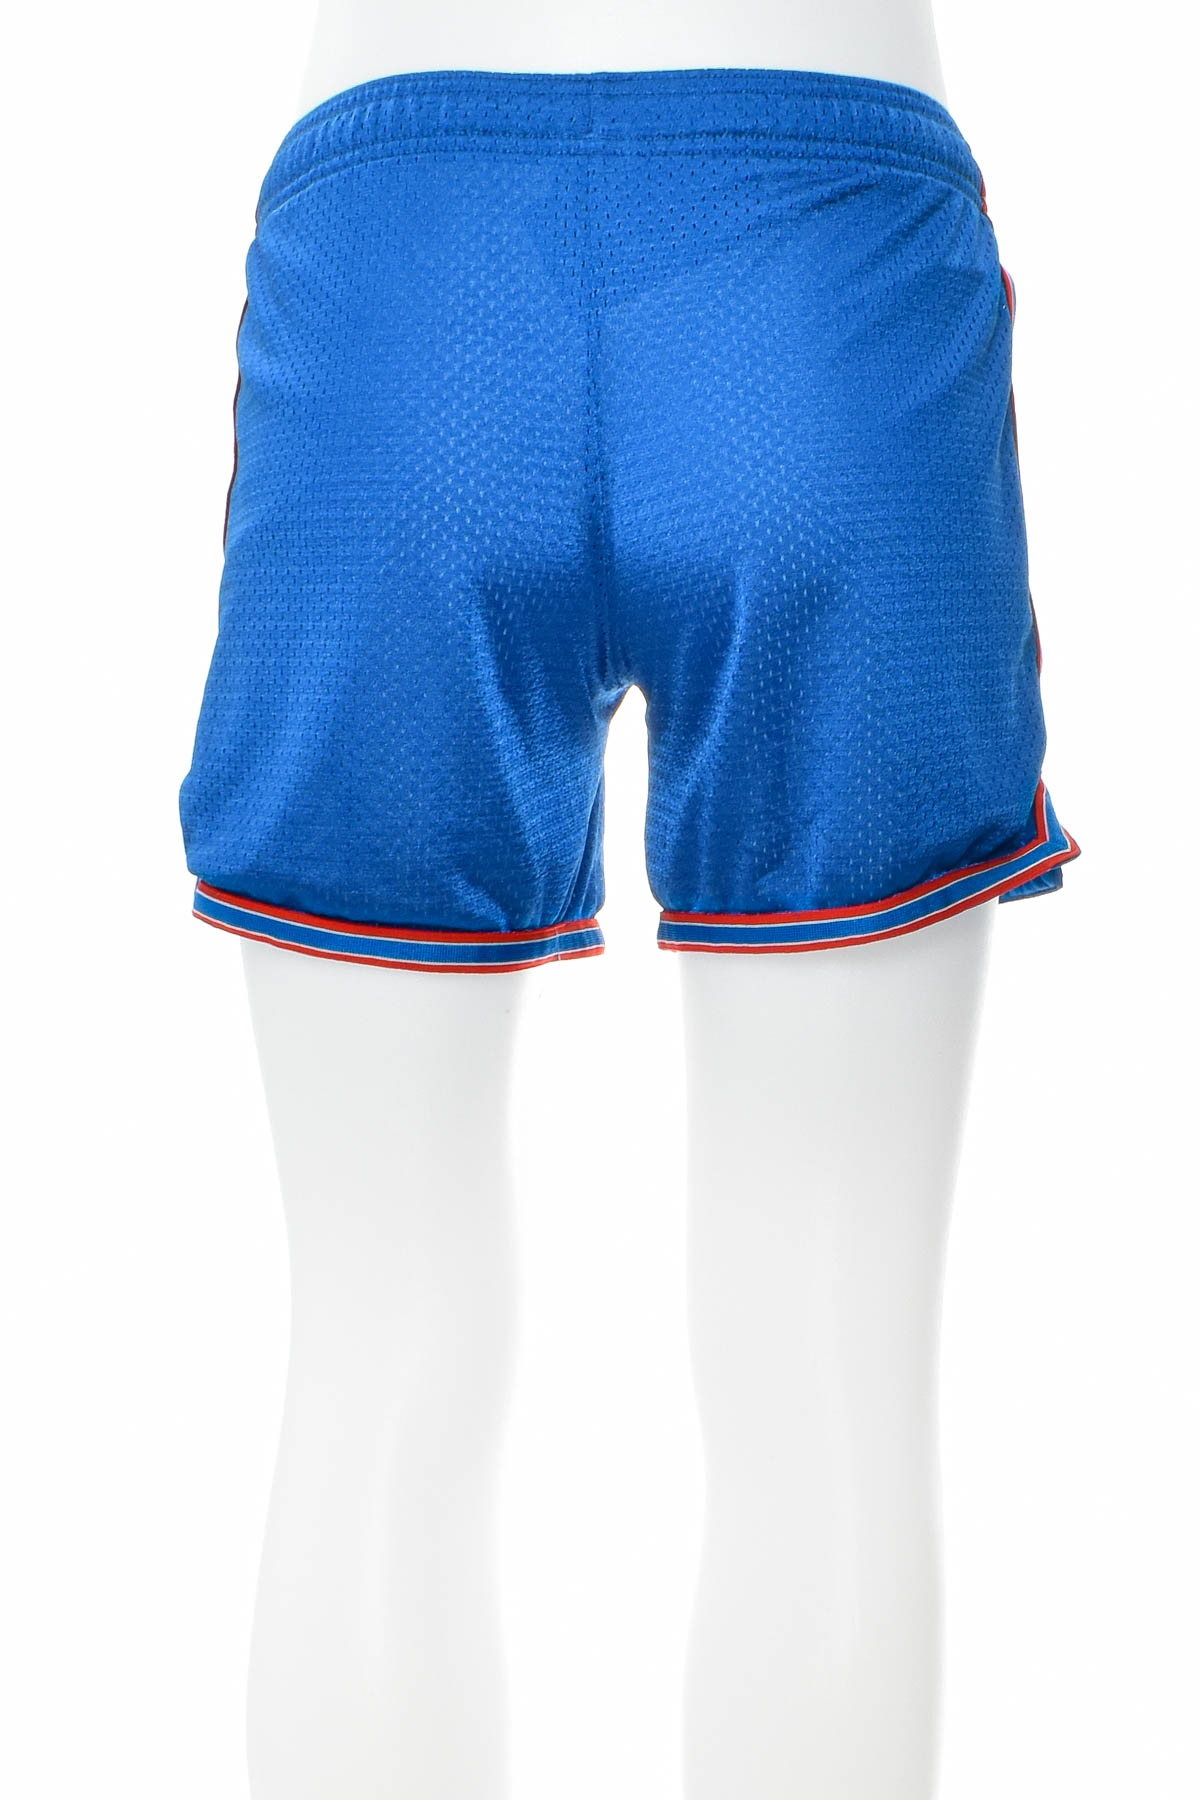 Men's shorts - NIKE - 1